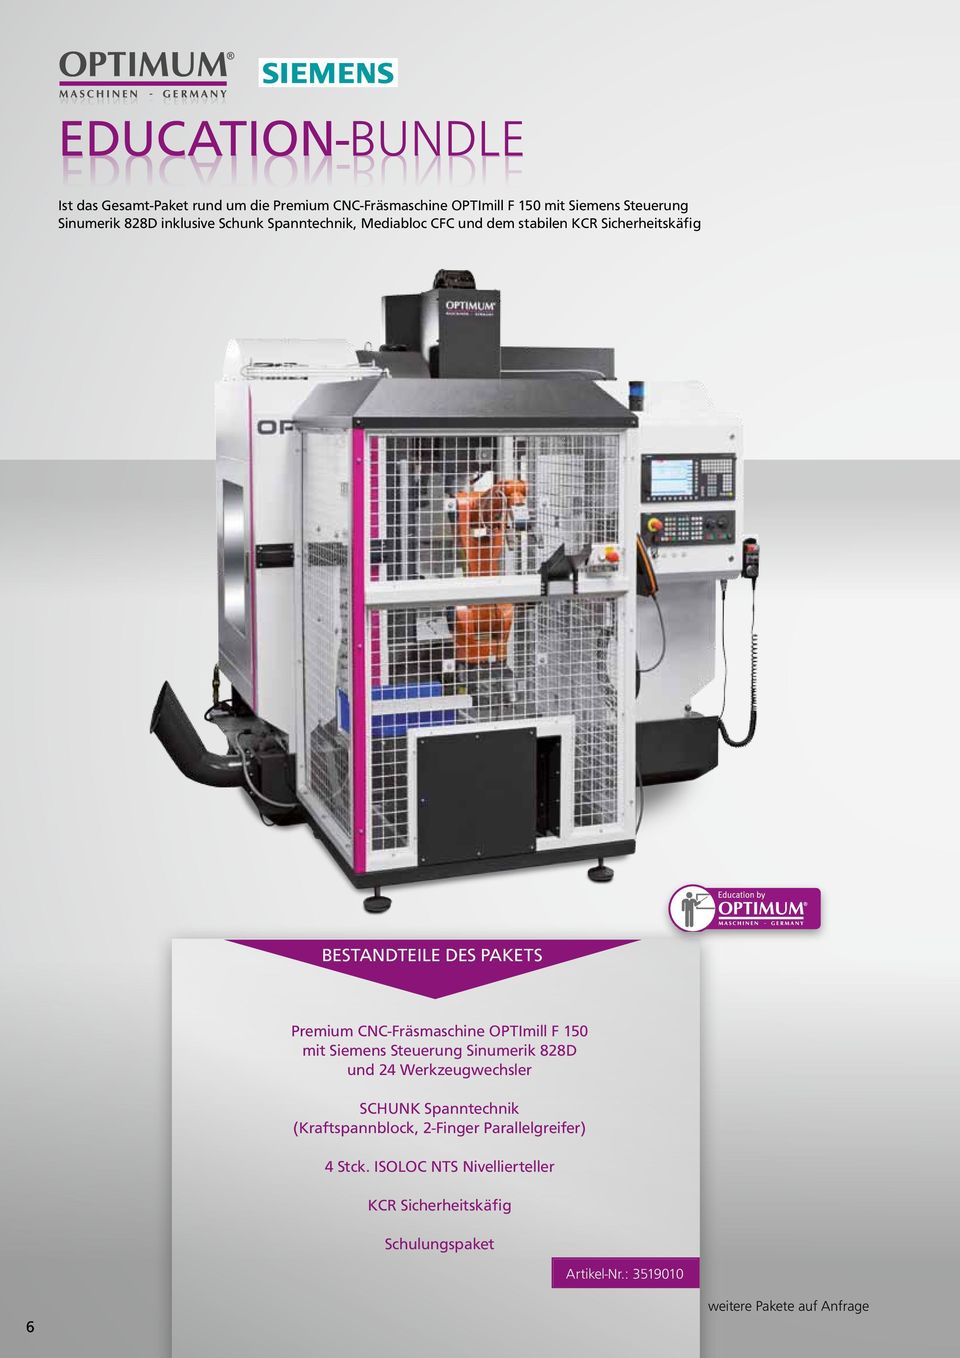 CNC-Fräsmaschine OPTImill F 150 mit Siemens Steuerung Sinumerik 828D und 24 Werkzeugwechsler SCHUNK Spanntechnik (Kraftspannblock,